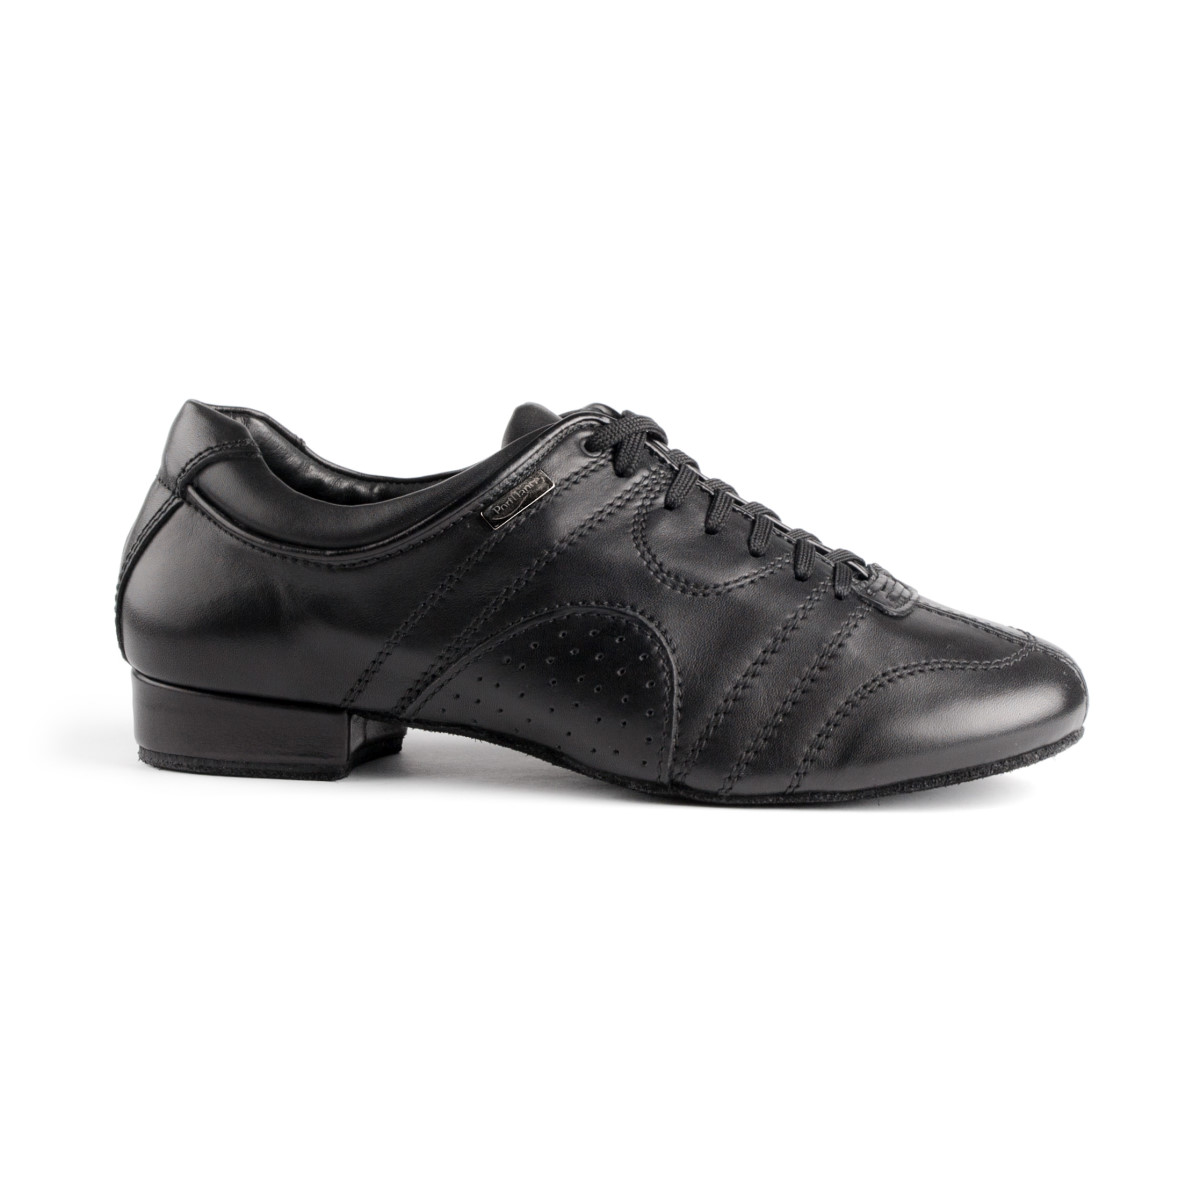 PortDance - Mens Dance Shoes PD - Black